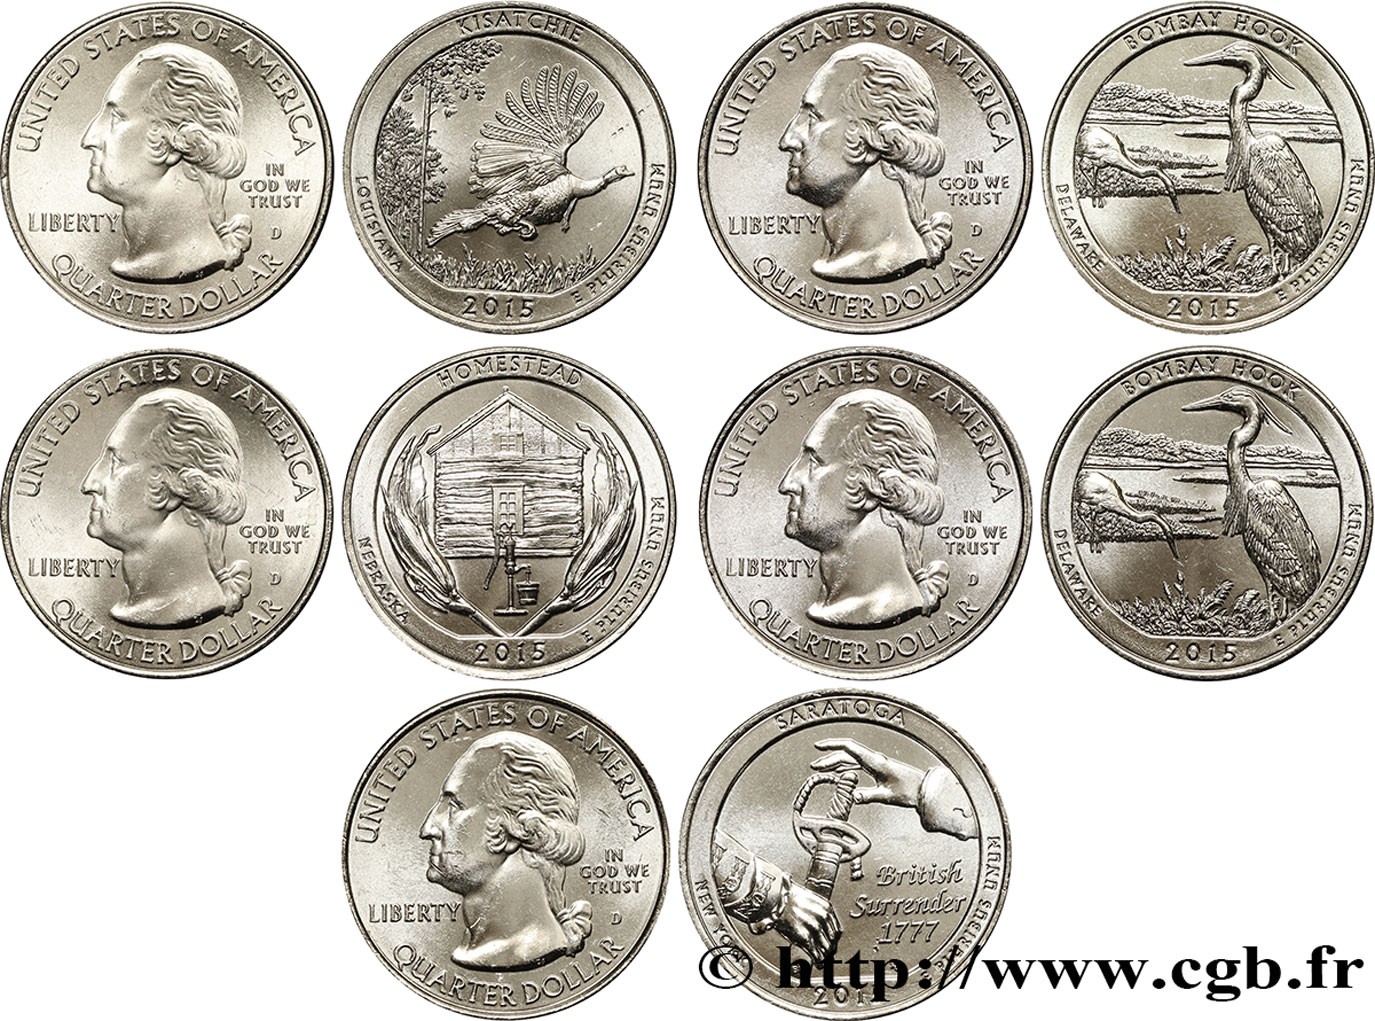 STATI UNITI D AMERICA Série complète des 5 monnaies de 1/4 de Dollar 2015 2015 Denver - D MS 